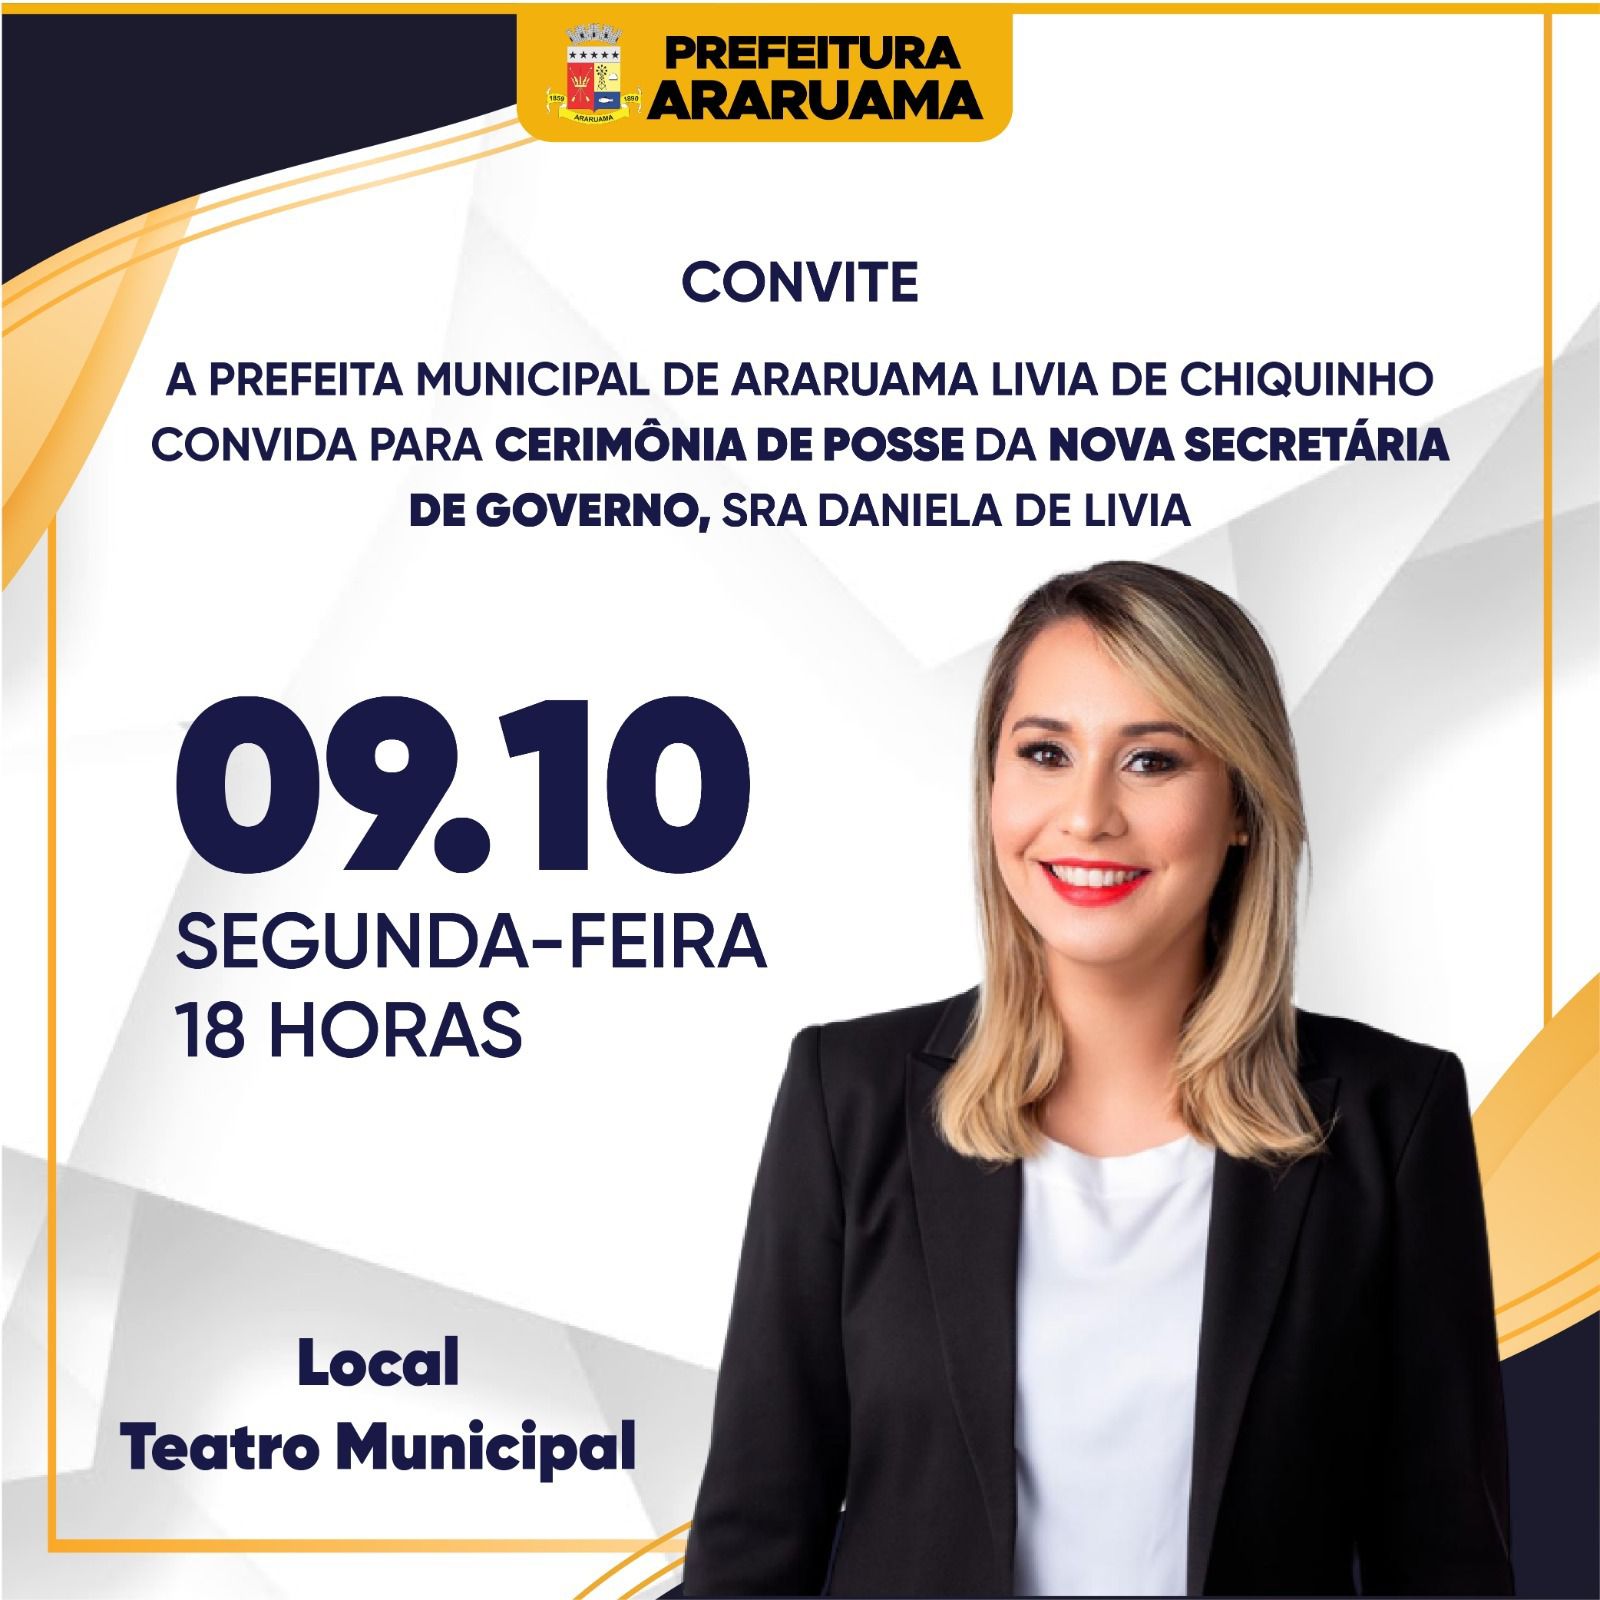 Prefeitura de Araruama vai realizar a cerimônia de posse da nova secretária de governo, Daniela de Livia, na próxima segunda-feira